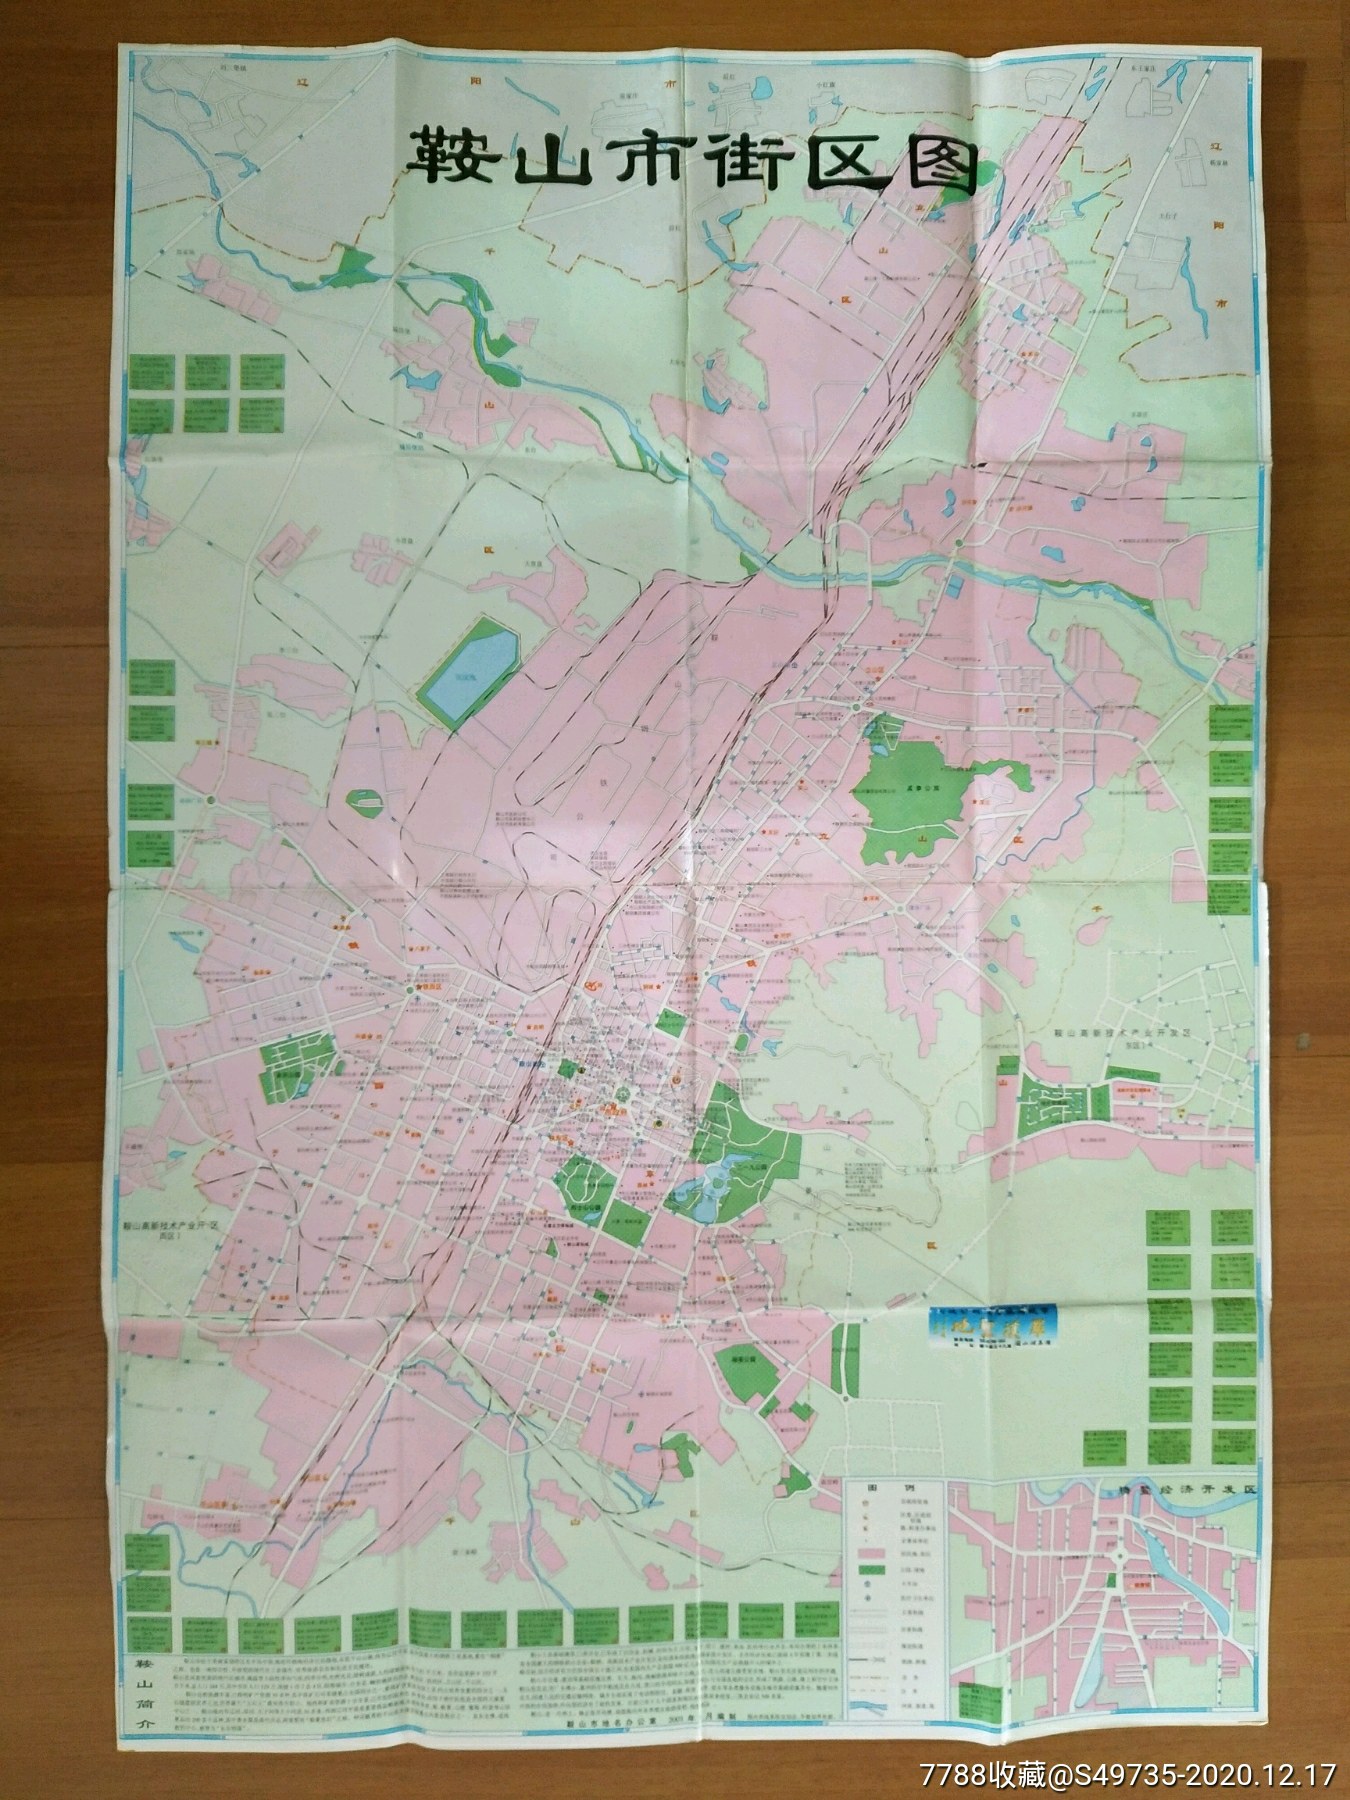 辽宁省鞍山市交通旅游地名图(2001年-旅游景点门票-7788门票收藏